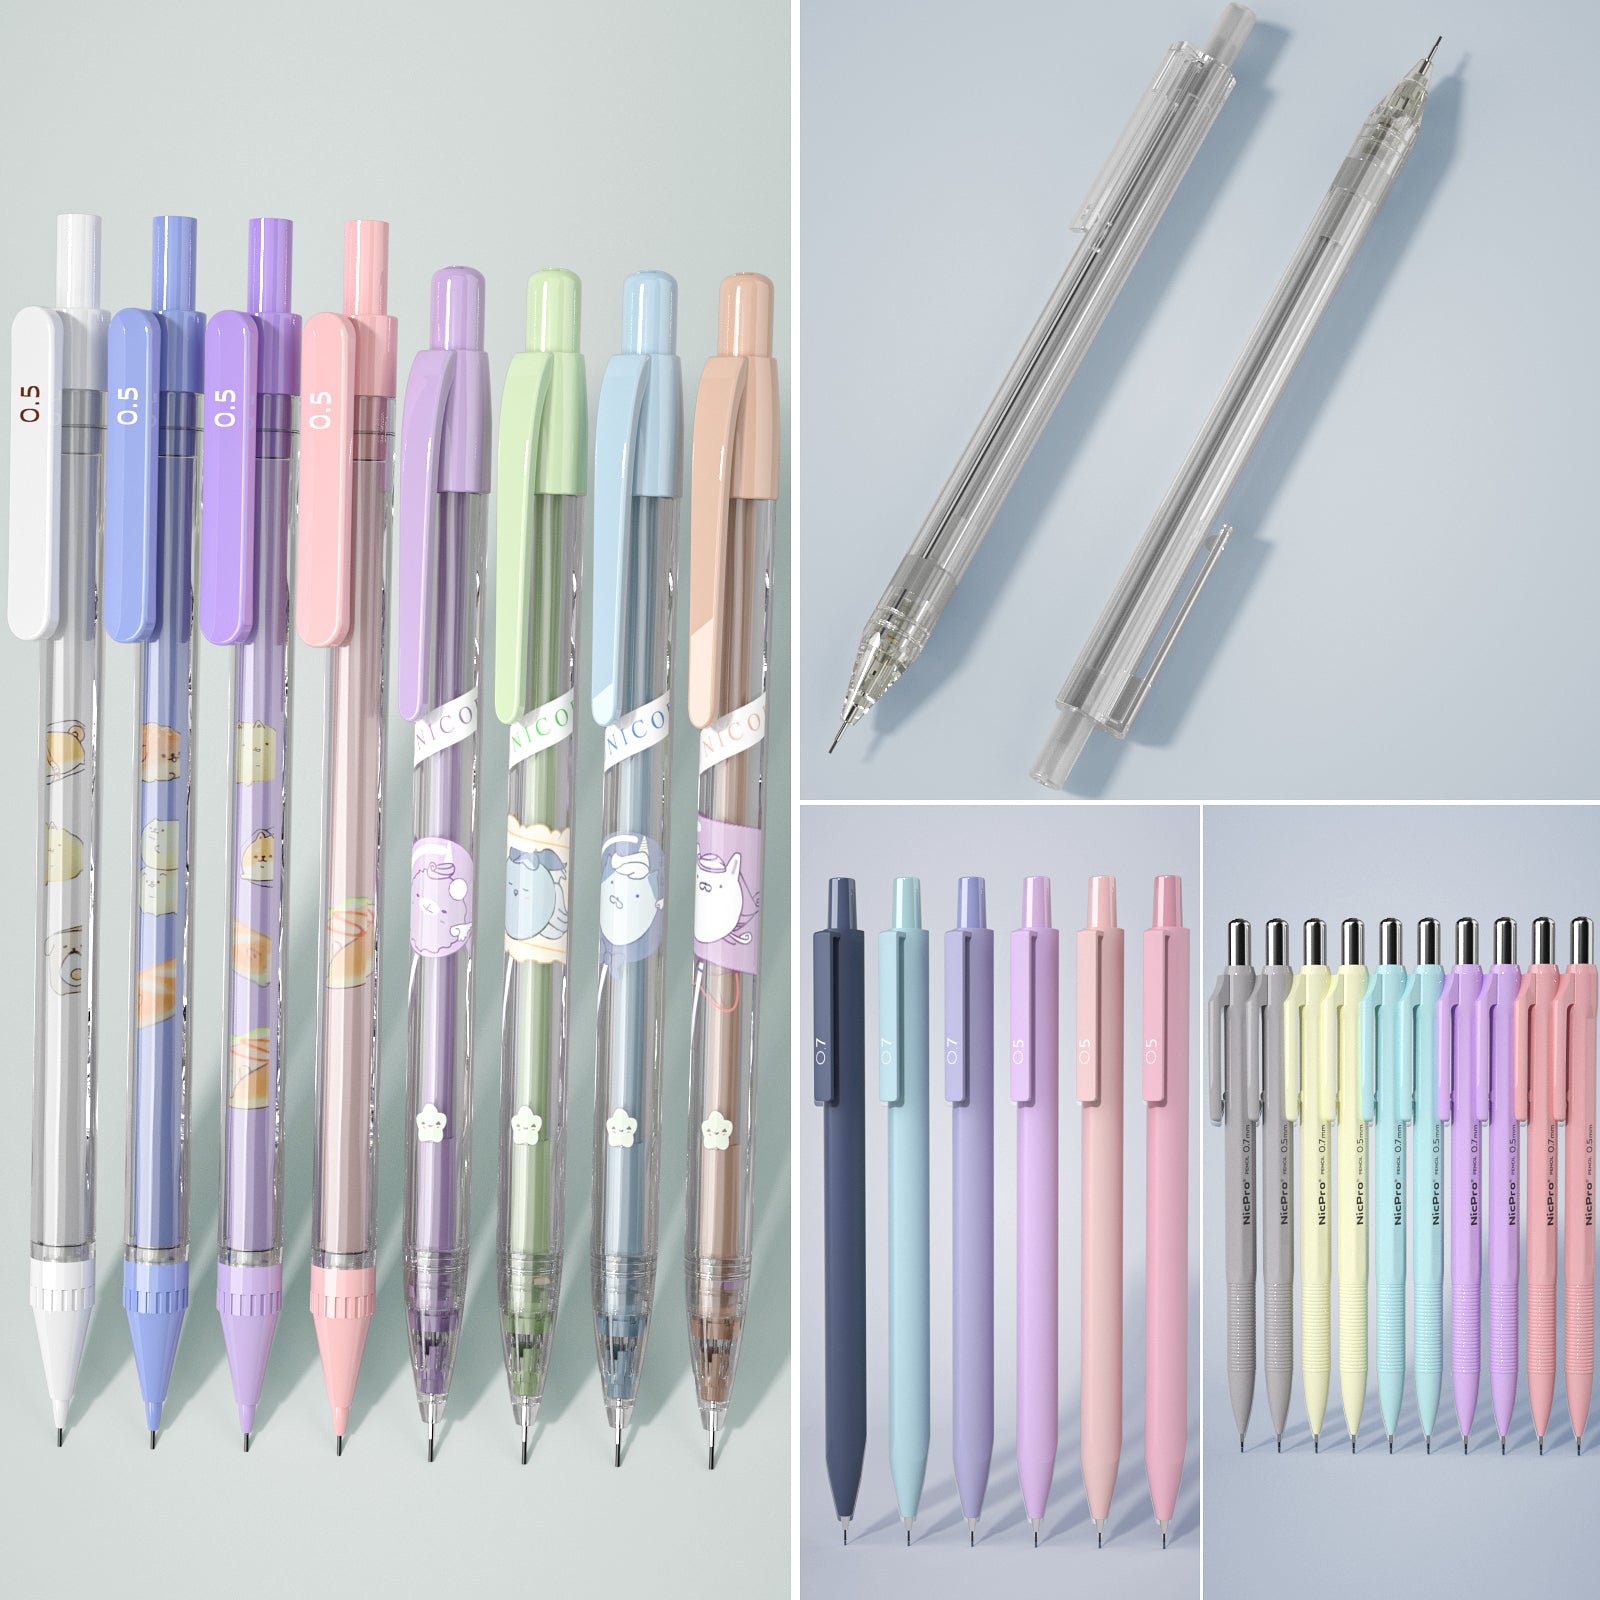 Nicpro 0.7mm Mechanical Pencil Bulk Set, 10 PCS Colored Lead Pencils w